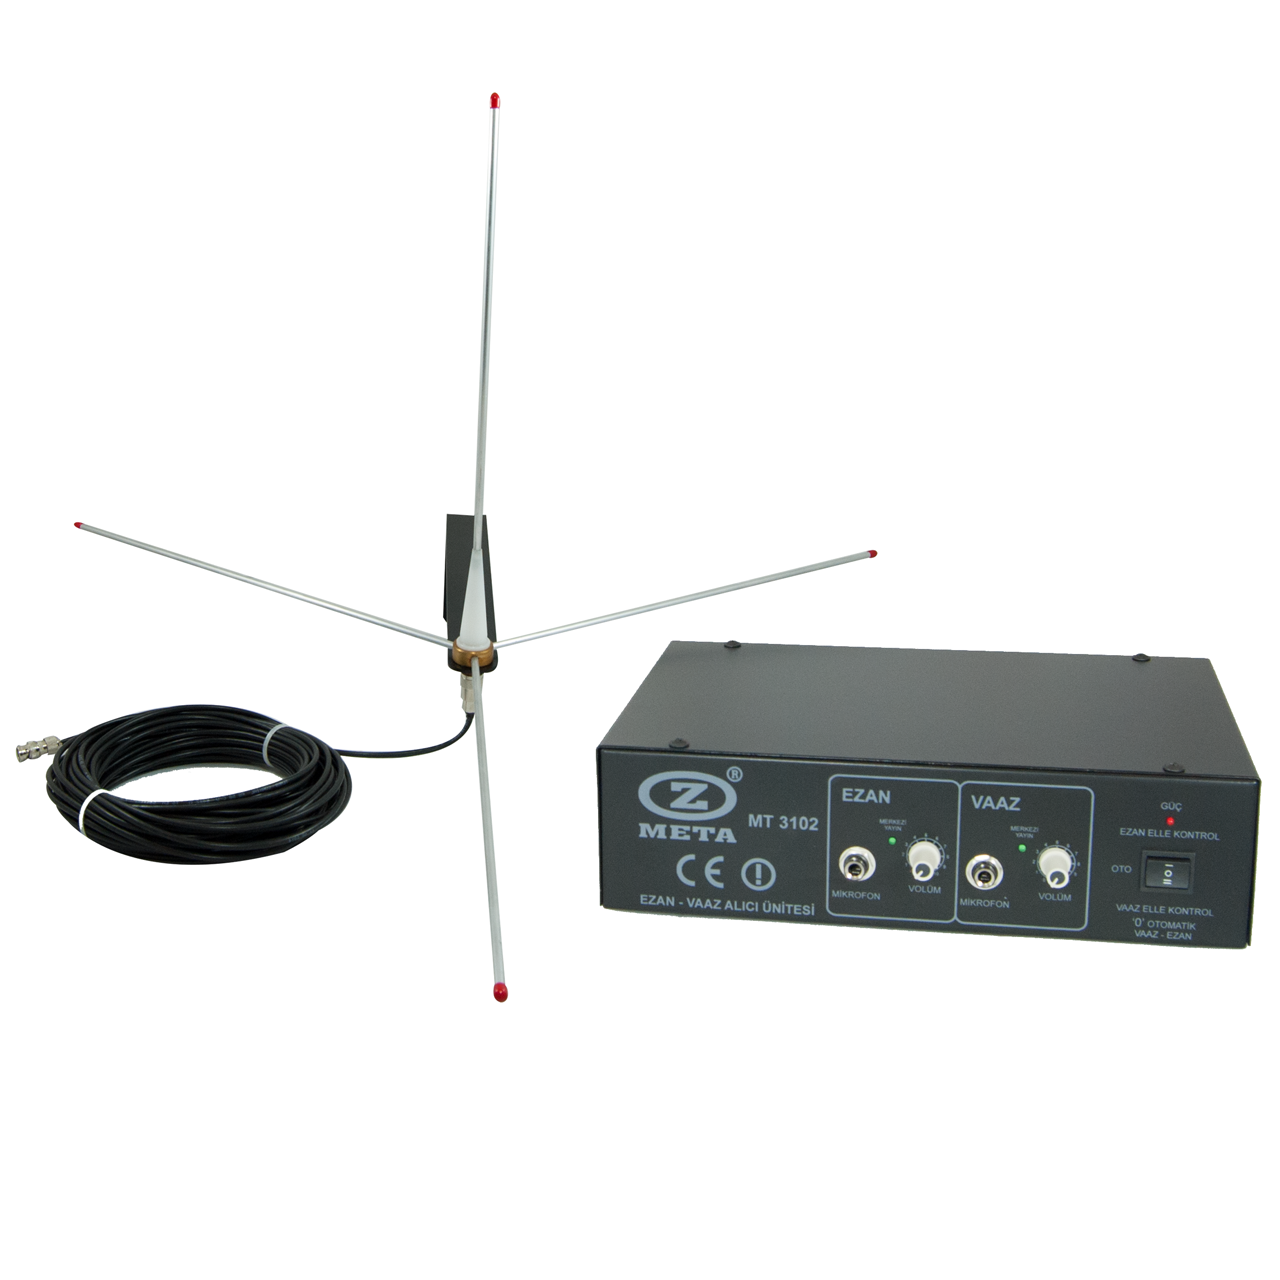 WEST SOUND MT 3102 VHF-UHF Ezan ve Vaaz Kablosuz (Telsiz) Alıcı Ünitesi